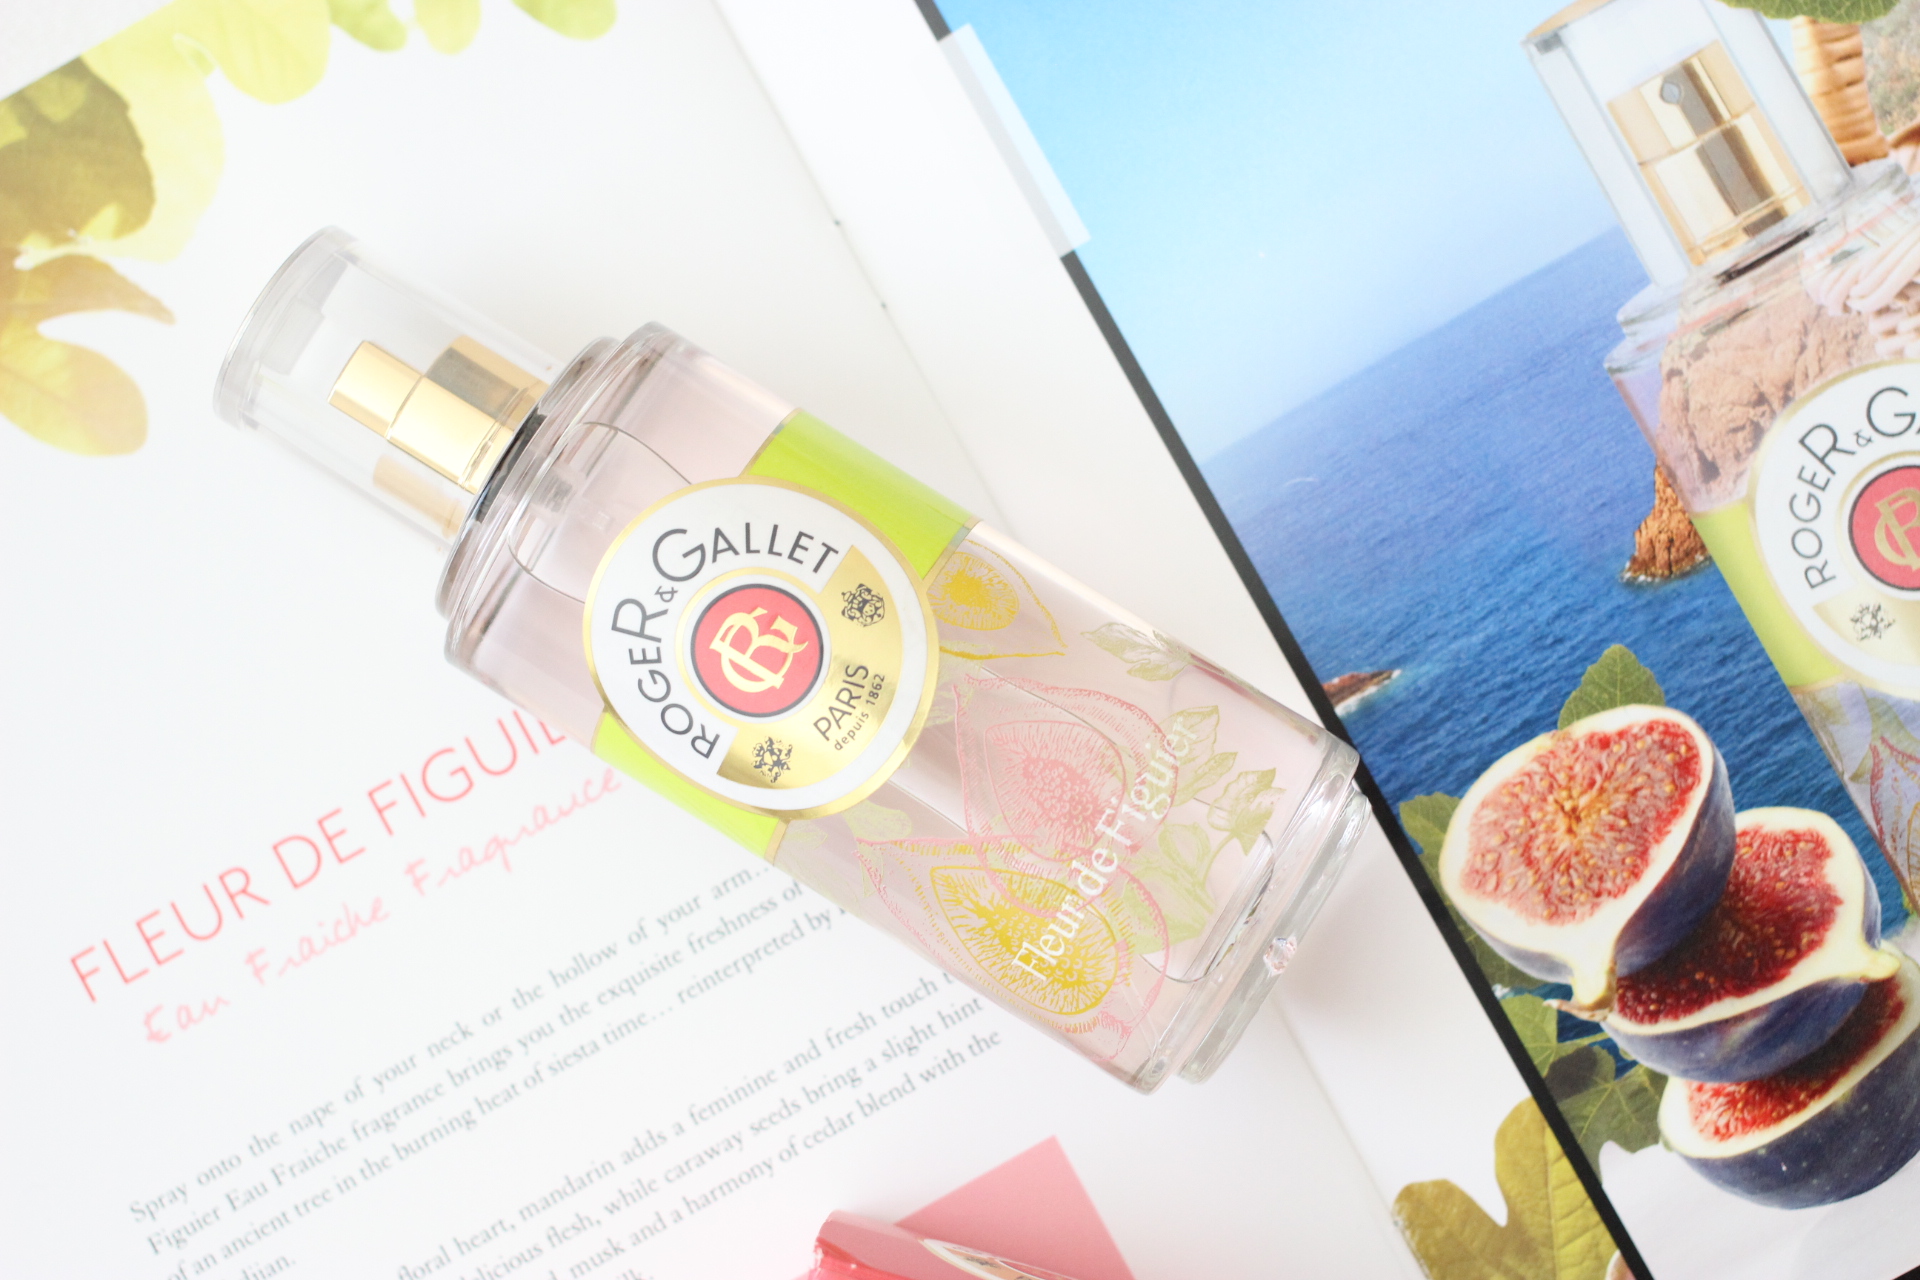 roger and gallet fleur de figuier perfume review